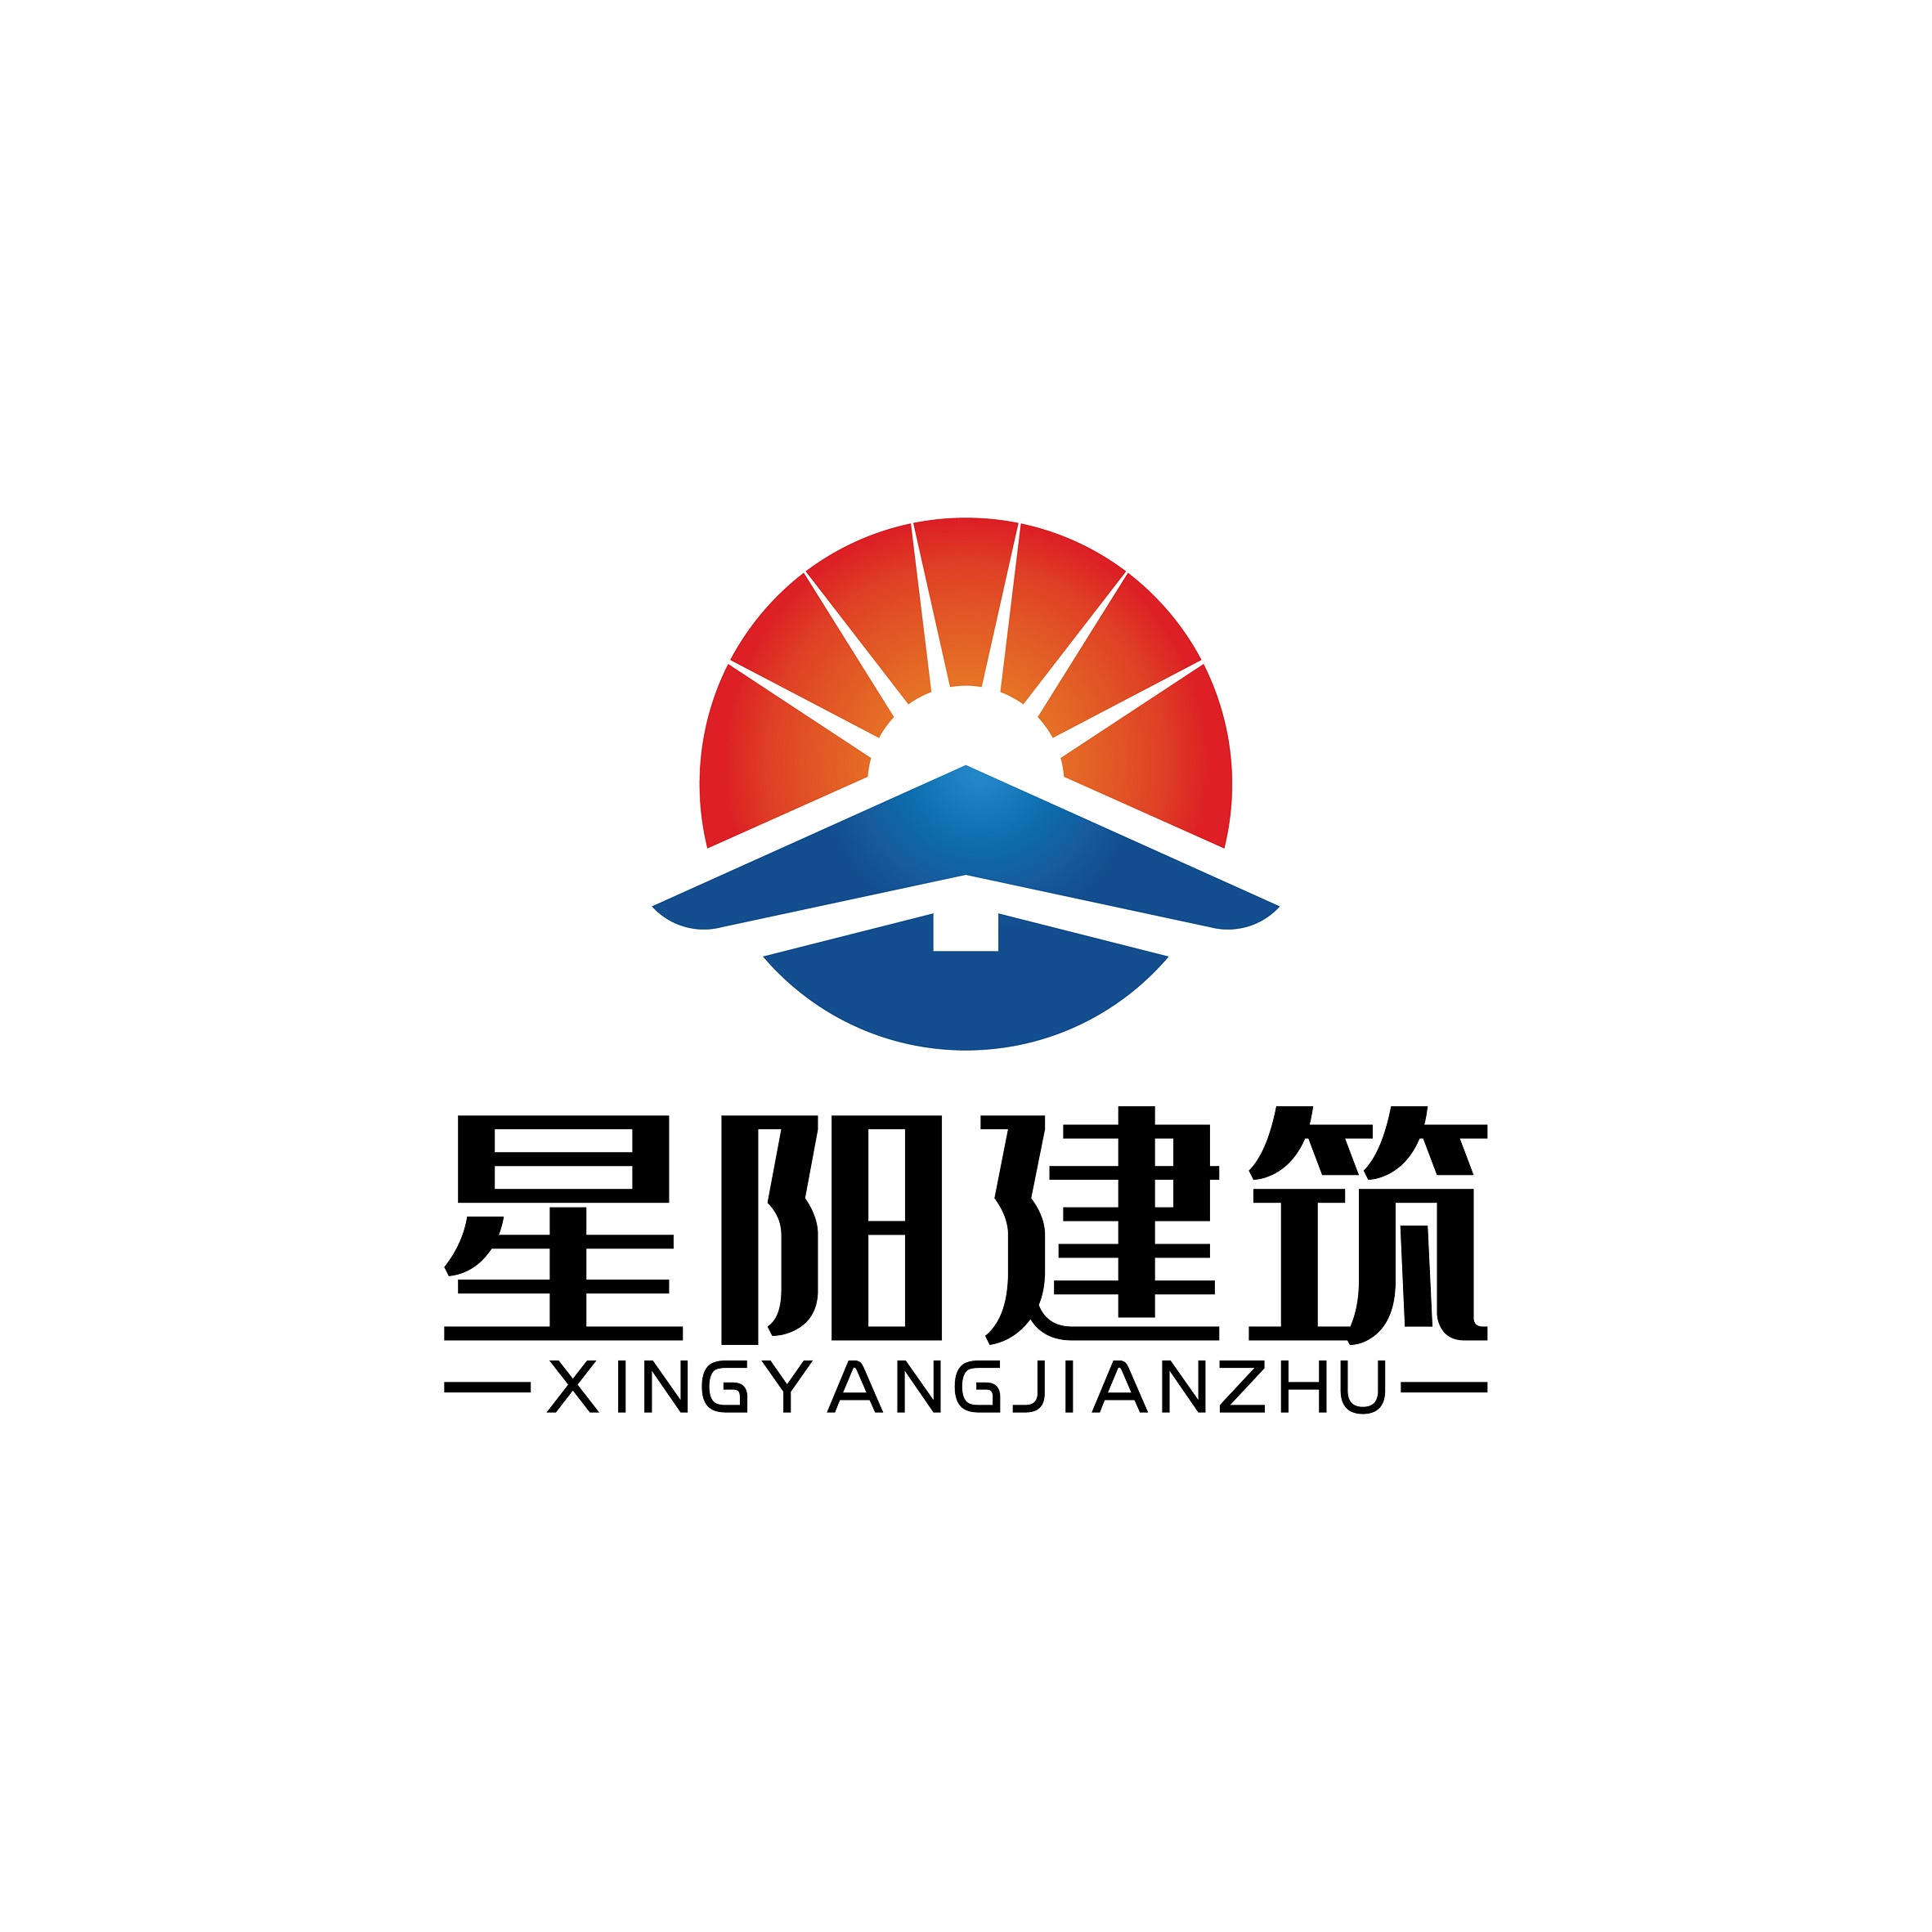 深圳市星阳建筑咨询有限公司 logo